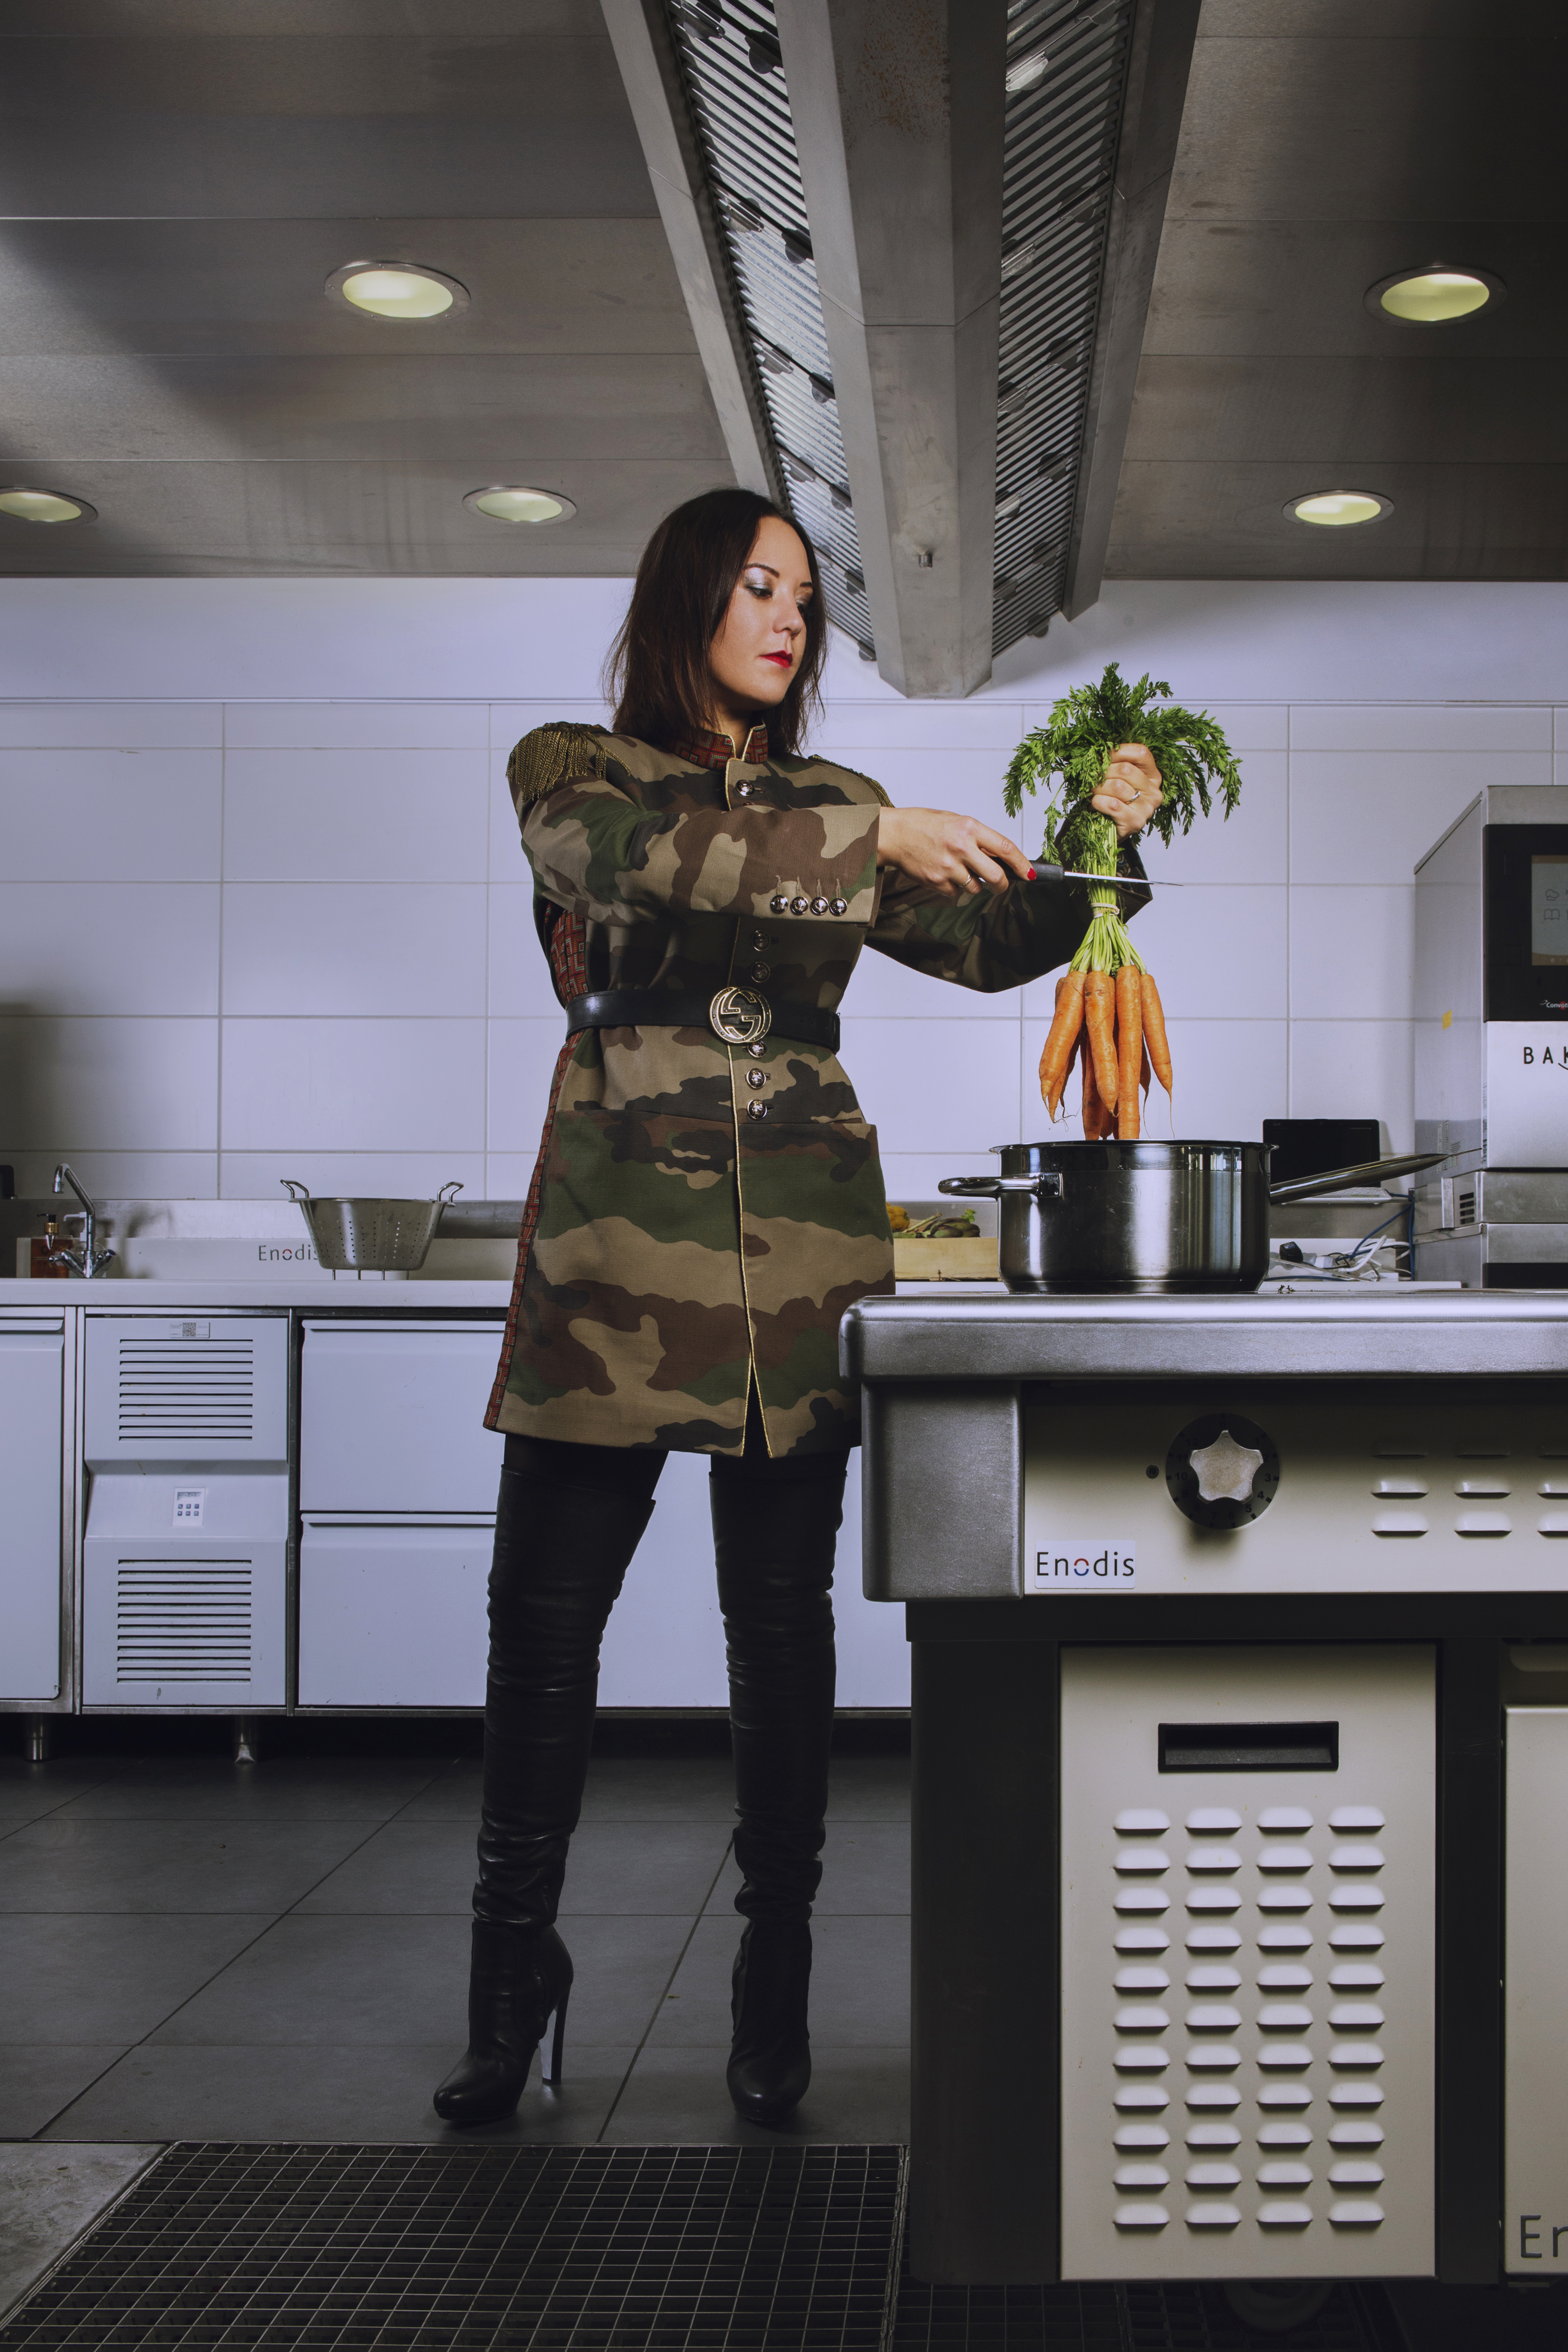 Top Chef 2020 : Découvrez la pétillante Nastasia Lyard dans un shooting photo exceptionnel